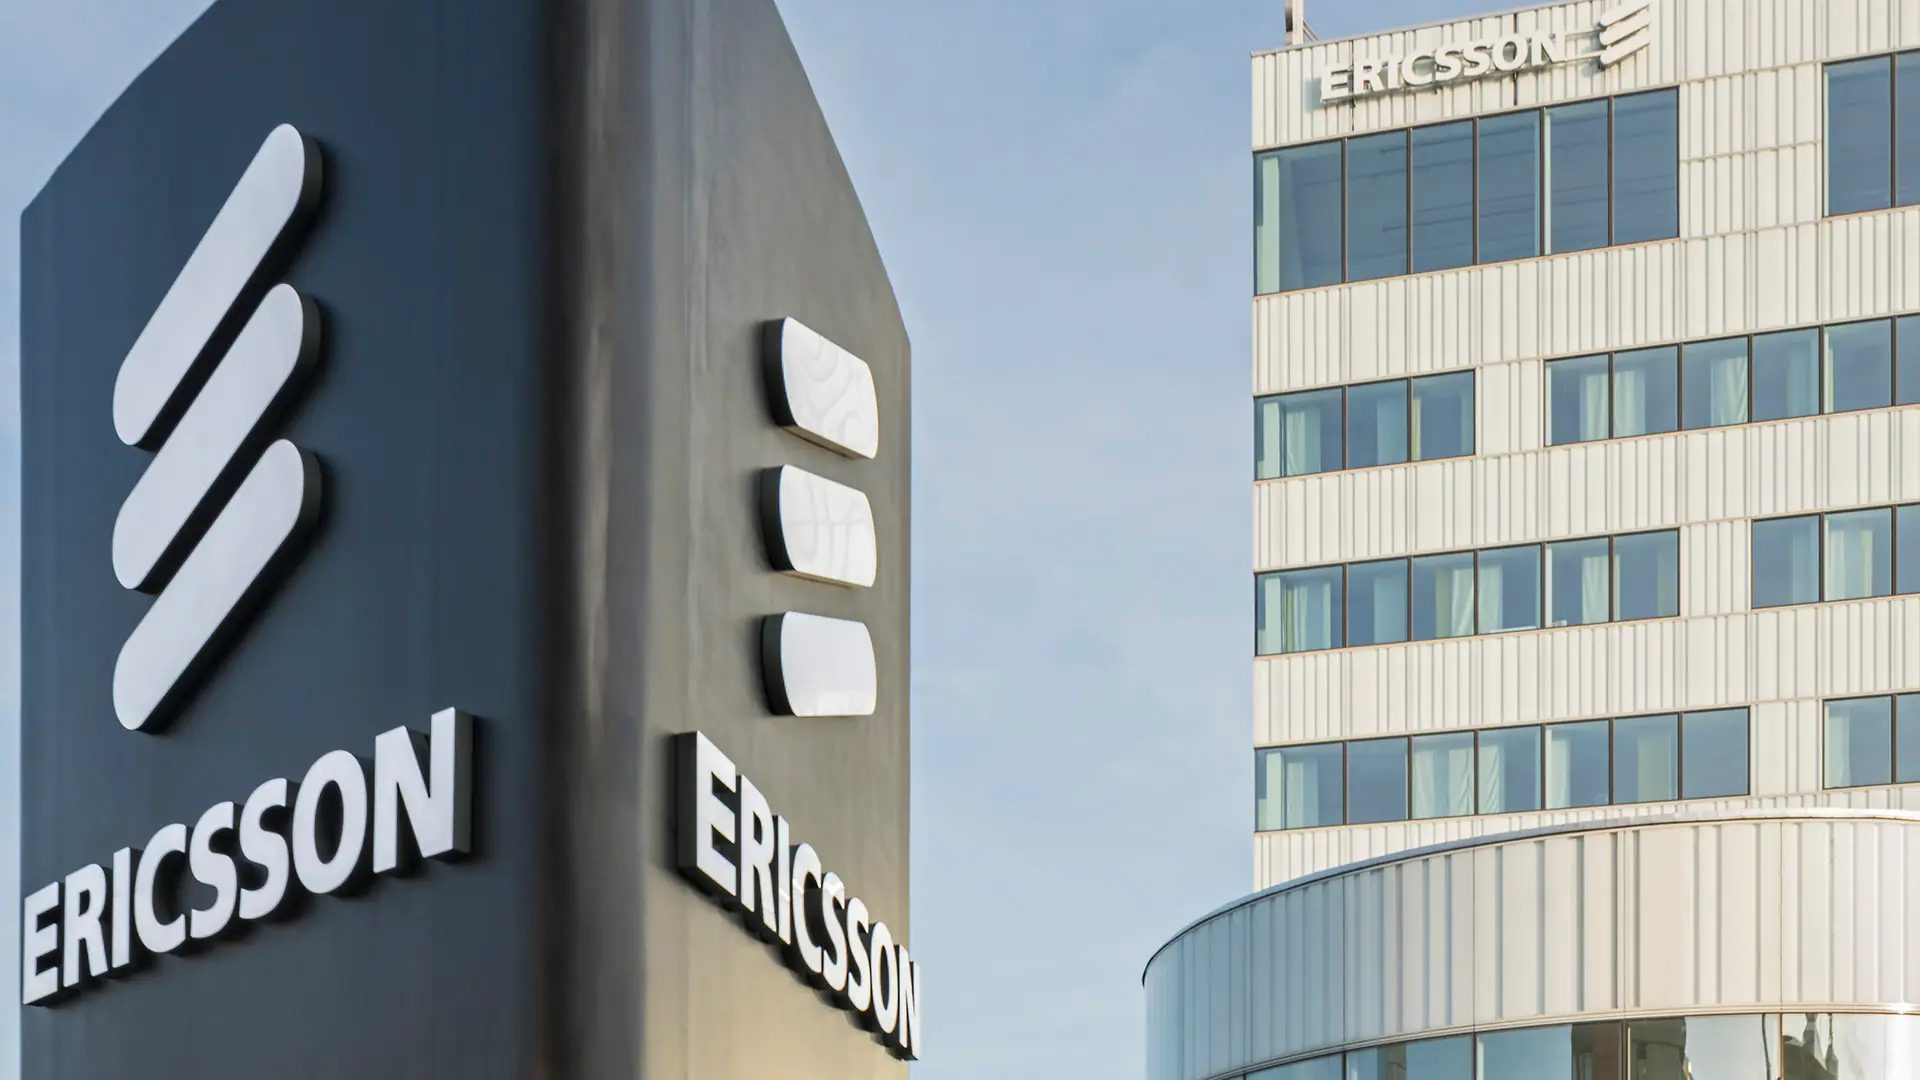 Ericsson Recruitment